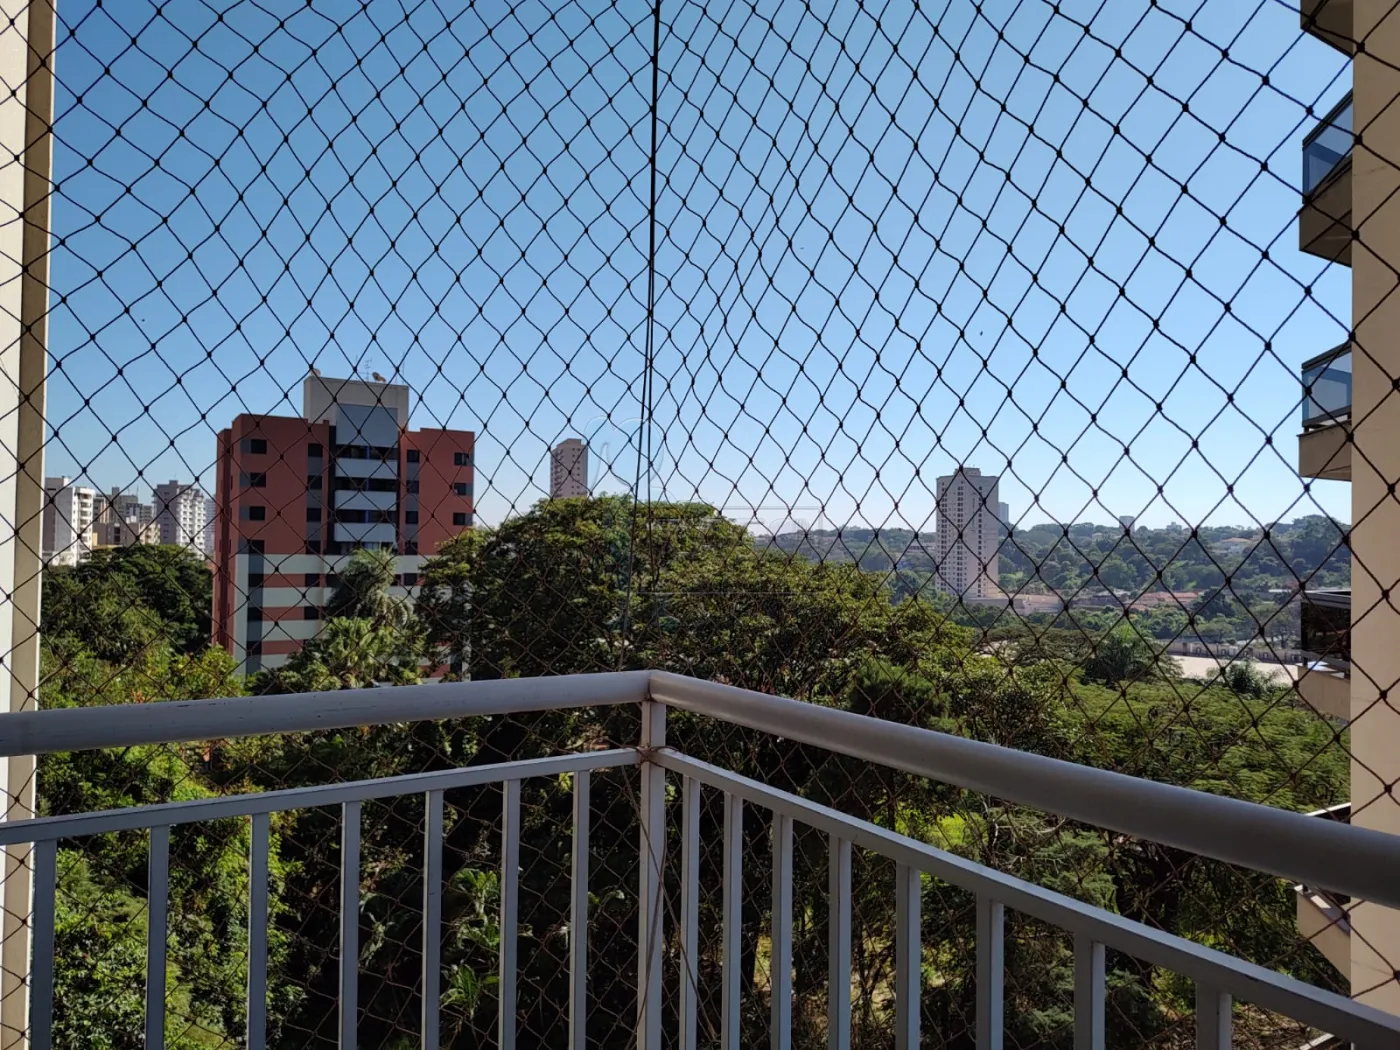 Comprar Apartamentos / Padrão em Ribeirão Preto R$ 380.000,00 - Foto 15